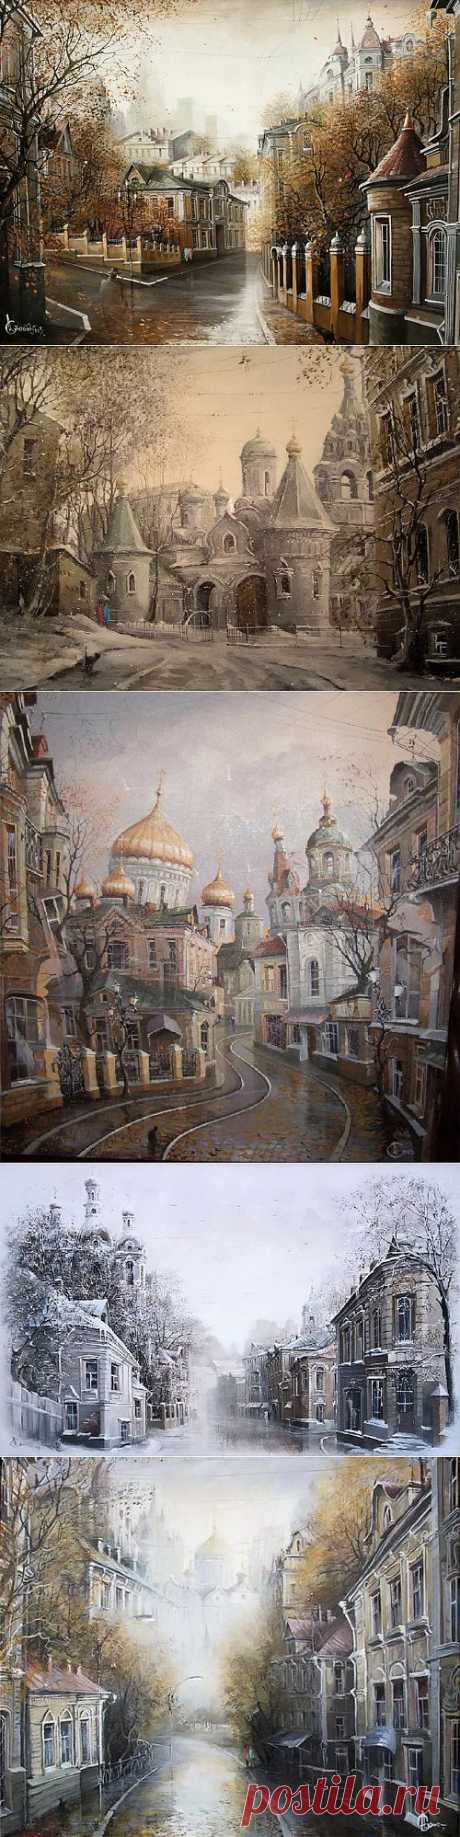 Картины Александра Стародубова. Старая Москва (32 работ) » Картины, художники, фотографы на Nevsepic